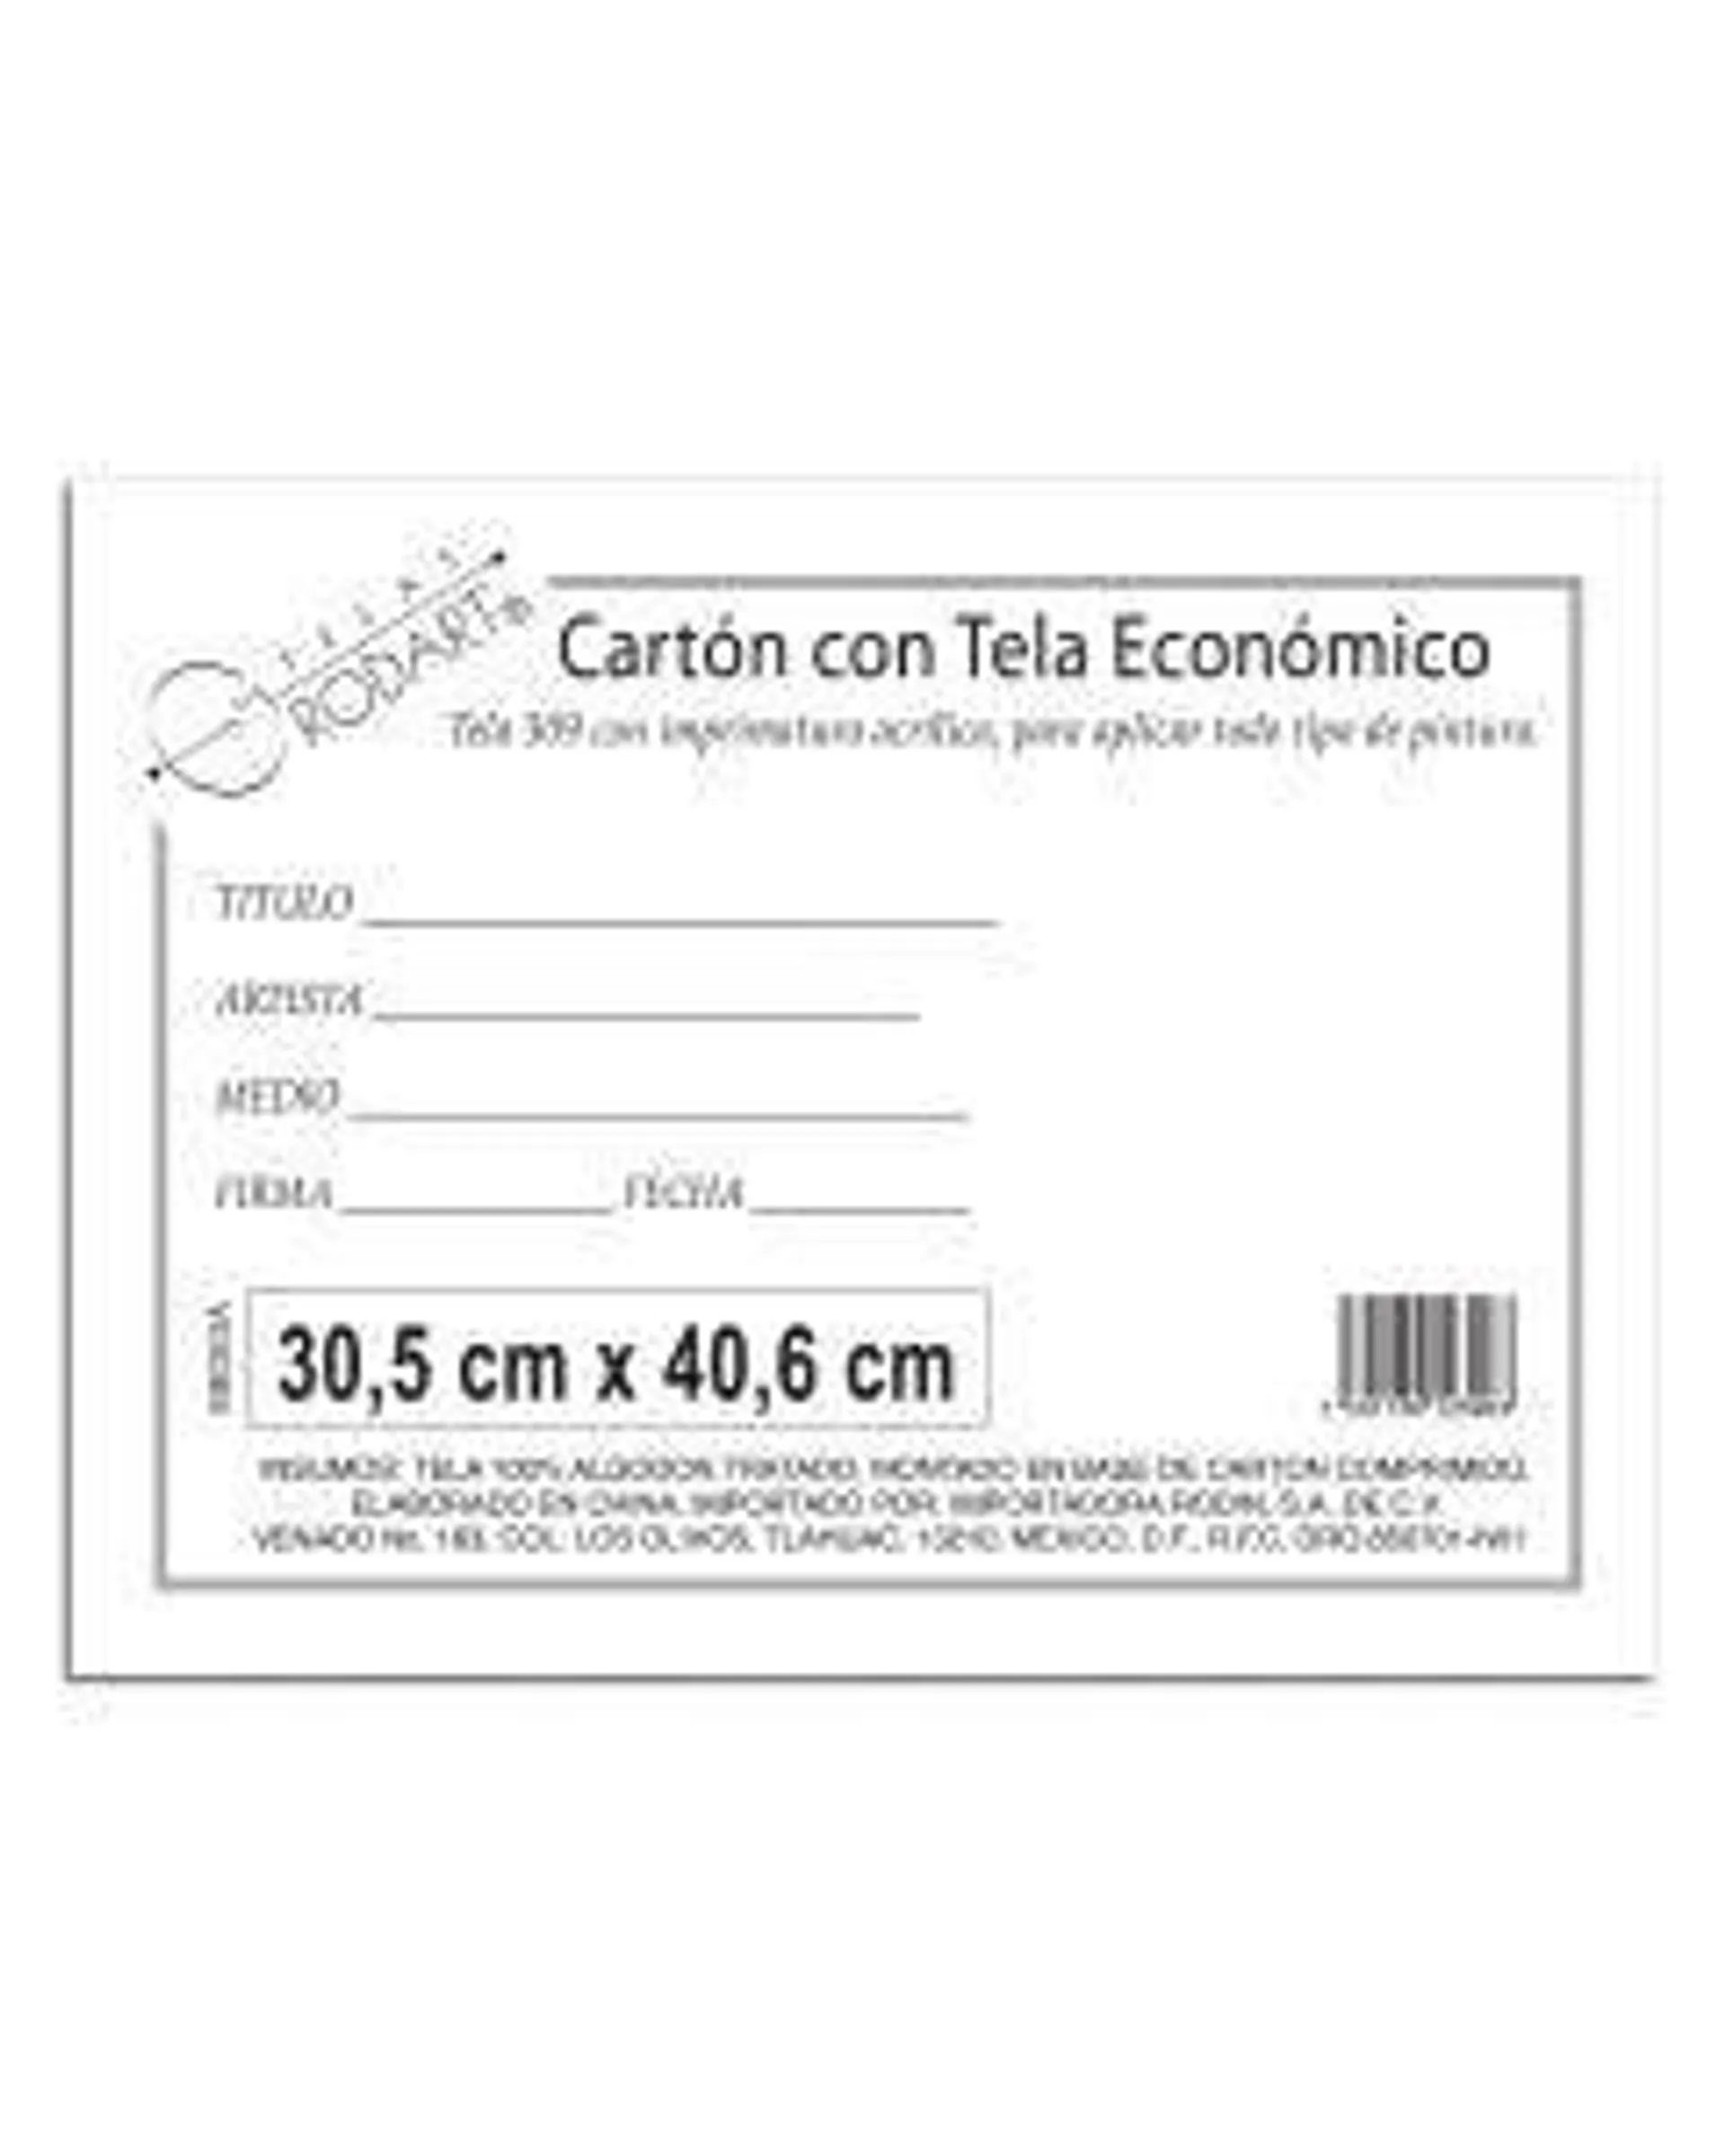 CARTON C/TELA ECONOMICO RODIN 30.5 X 40.6 CM